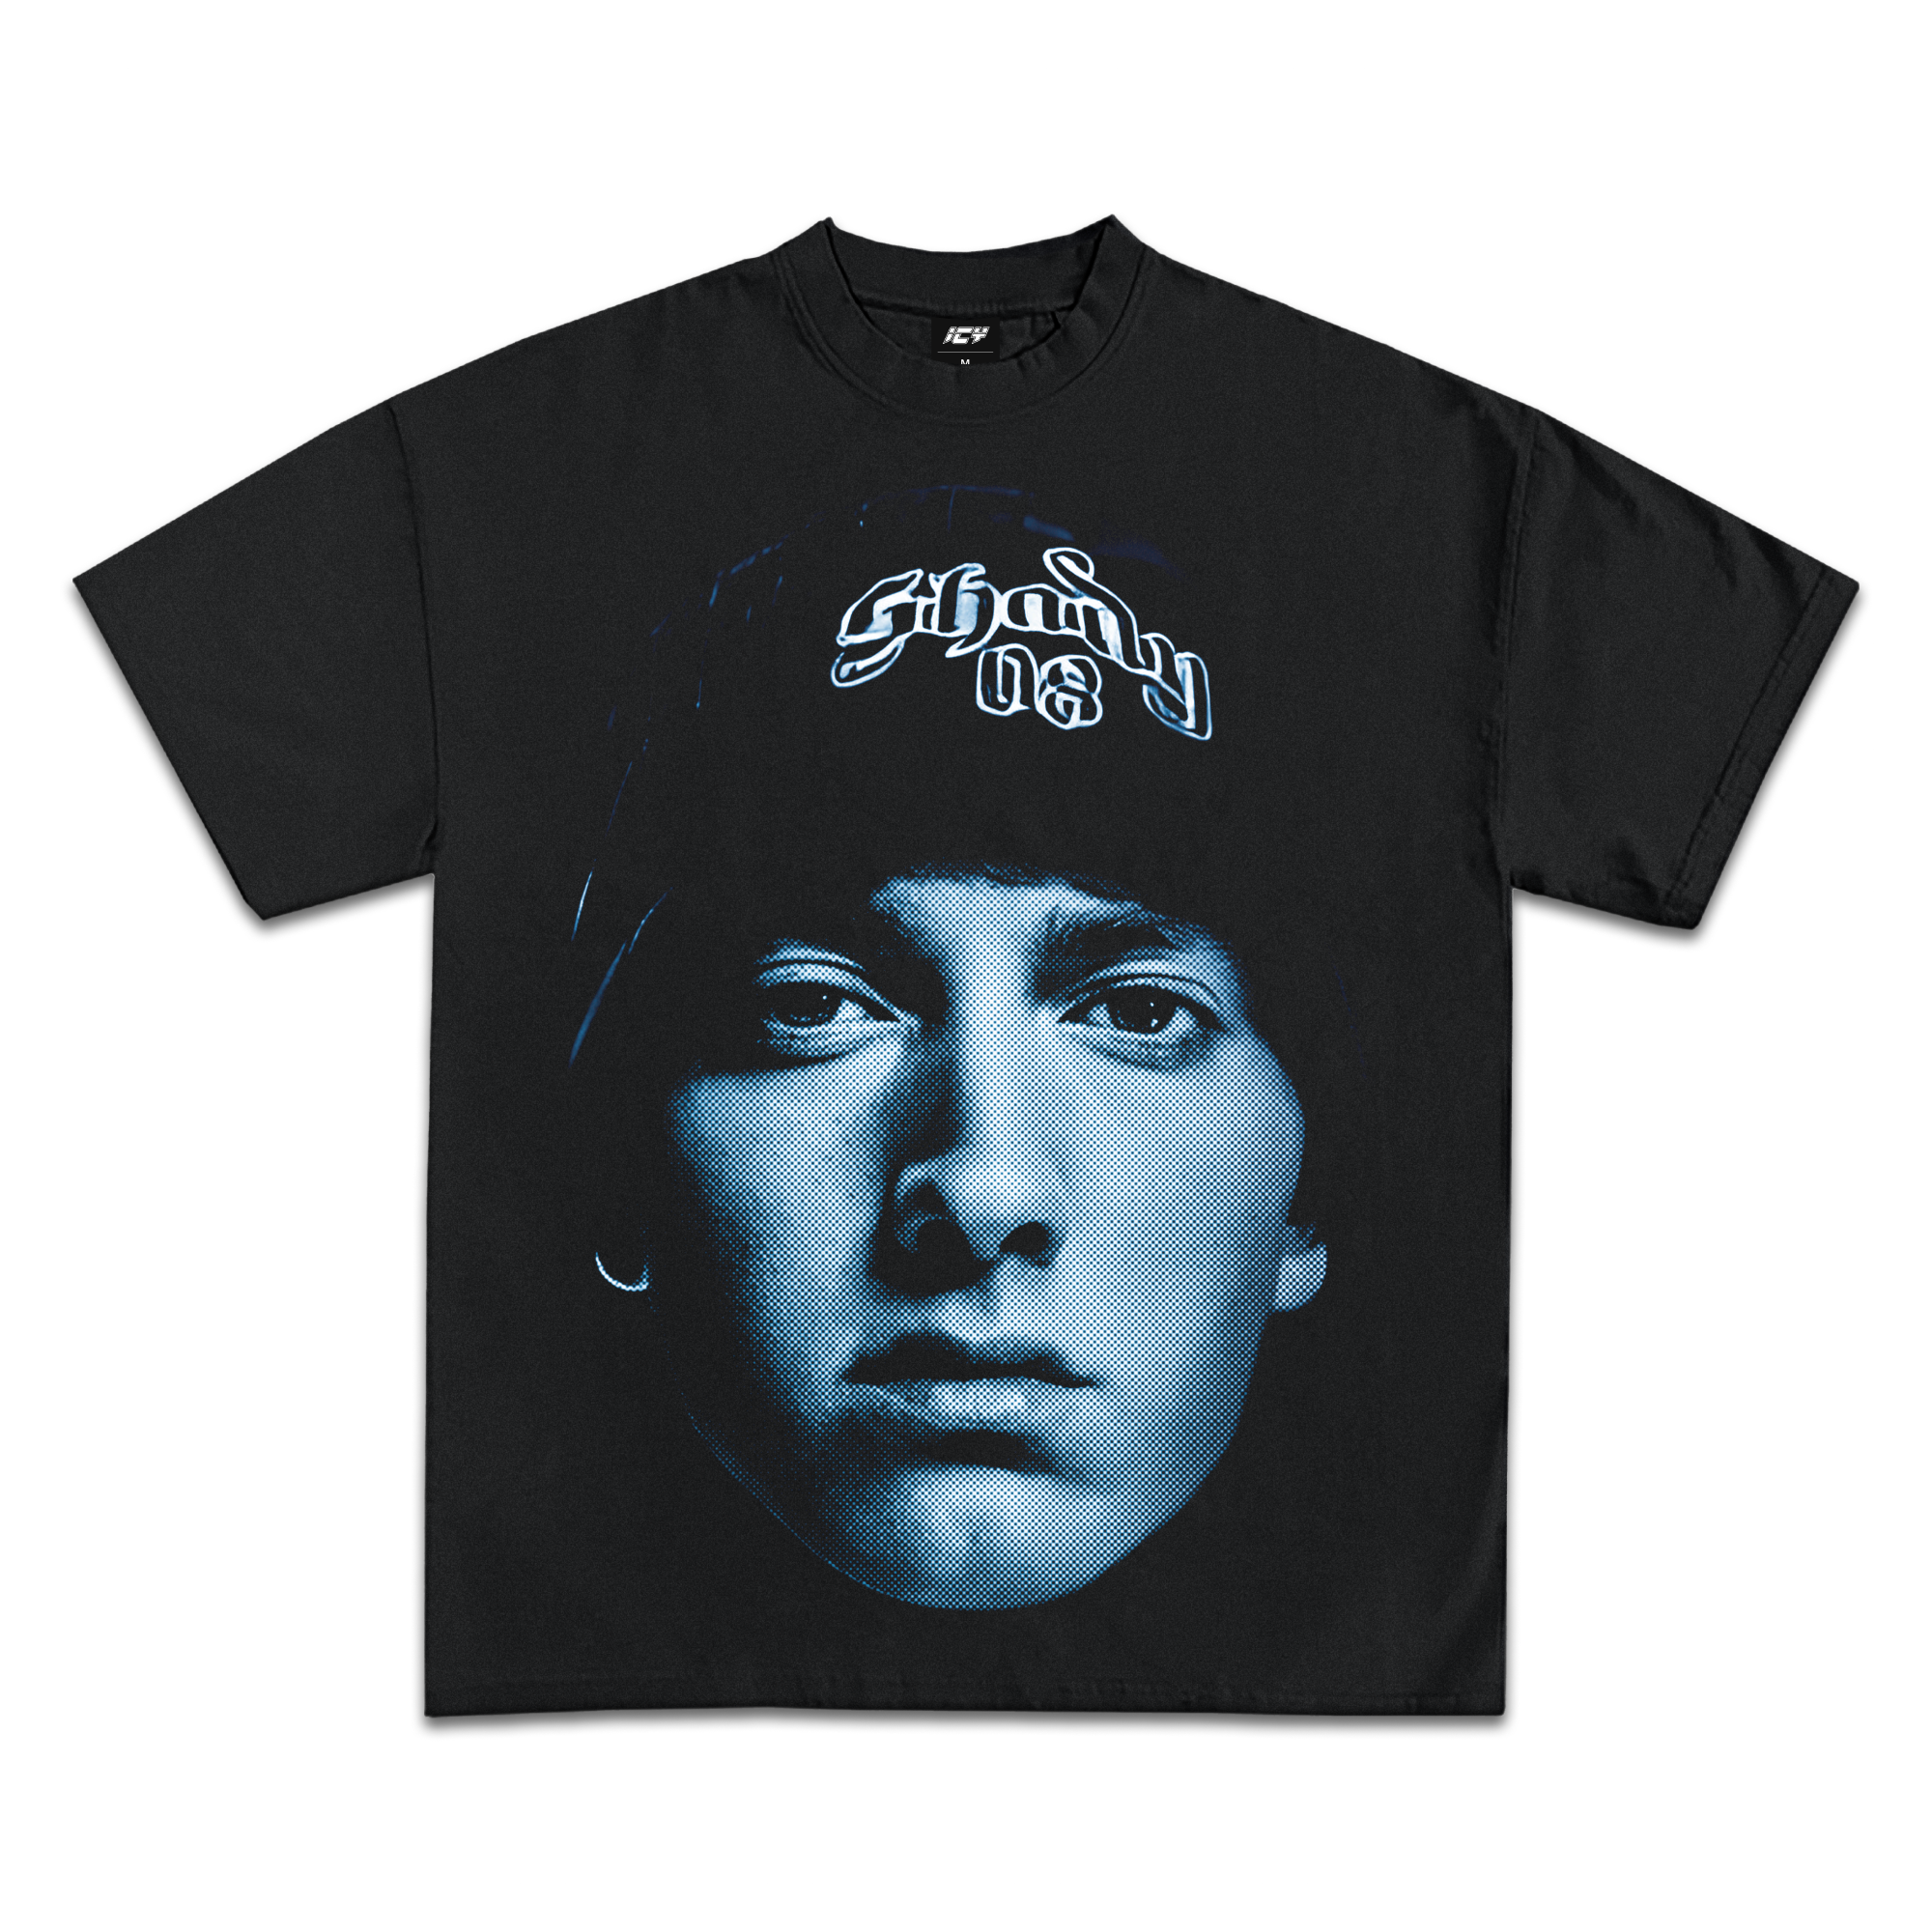 Eminem "Slim Shady" Graphic T-Shirt